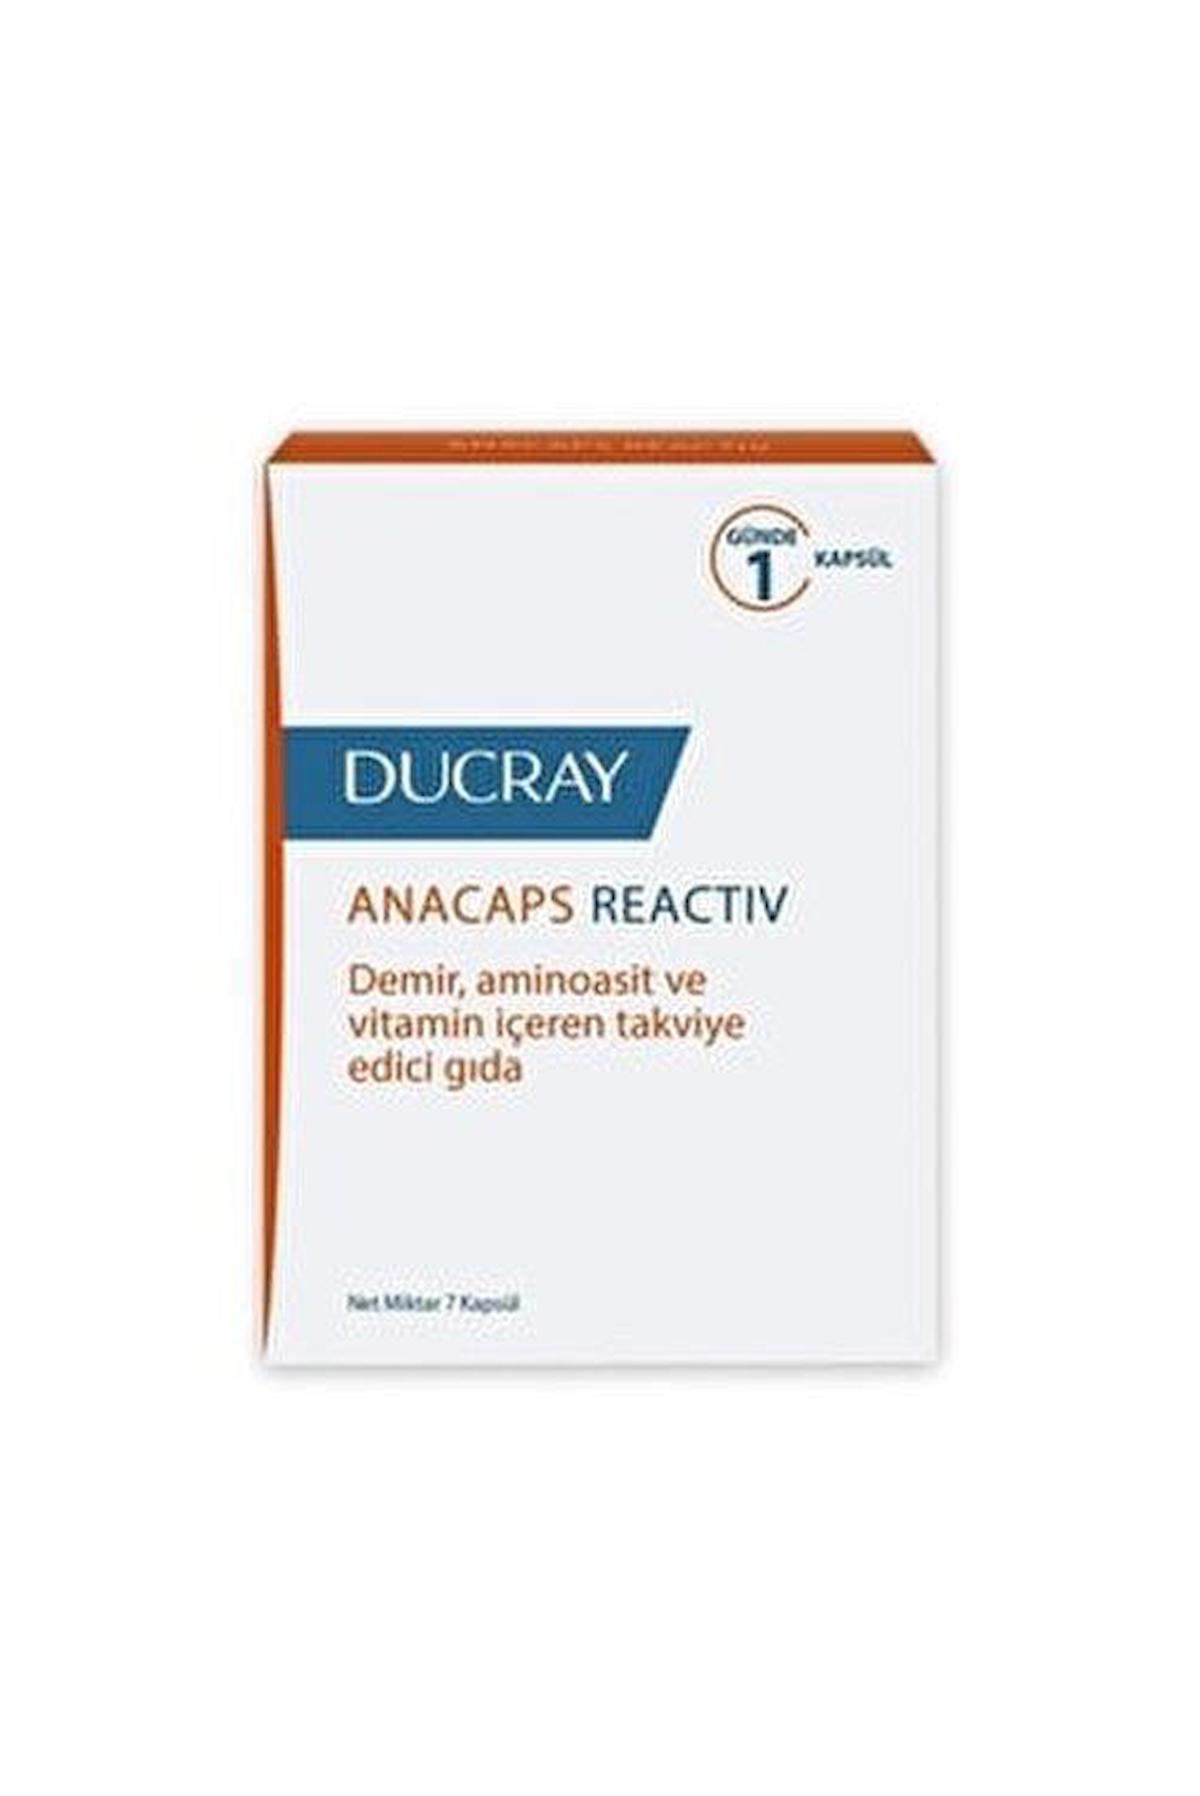 Ducray Anacaps Reactiv Sade Unisex Vitamin 30 Tablet